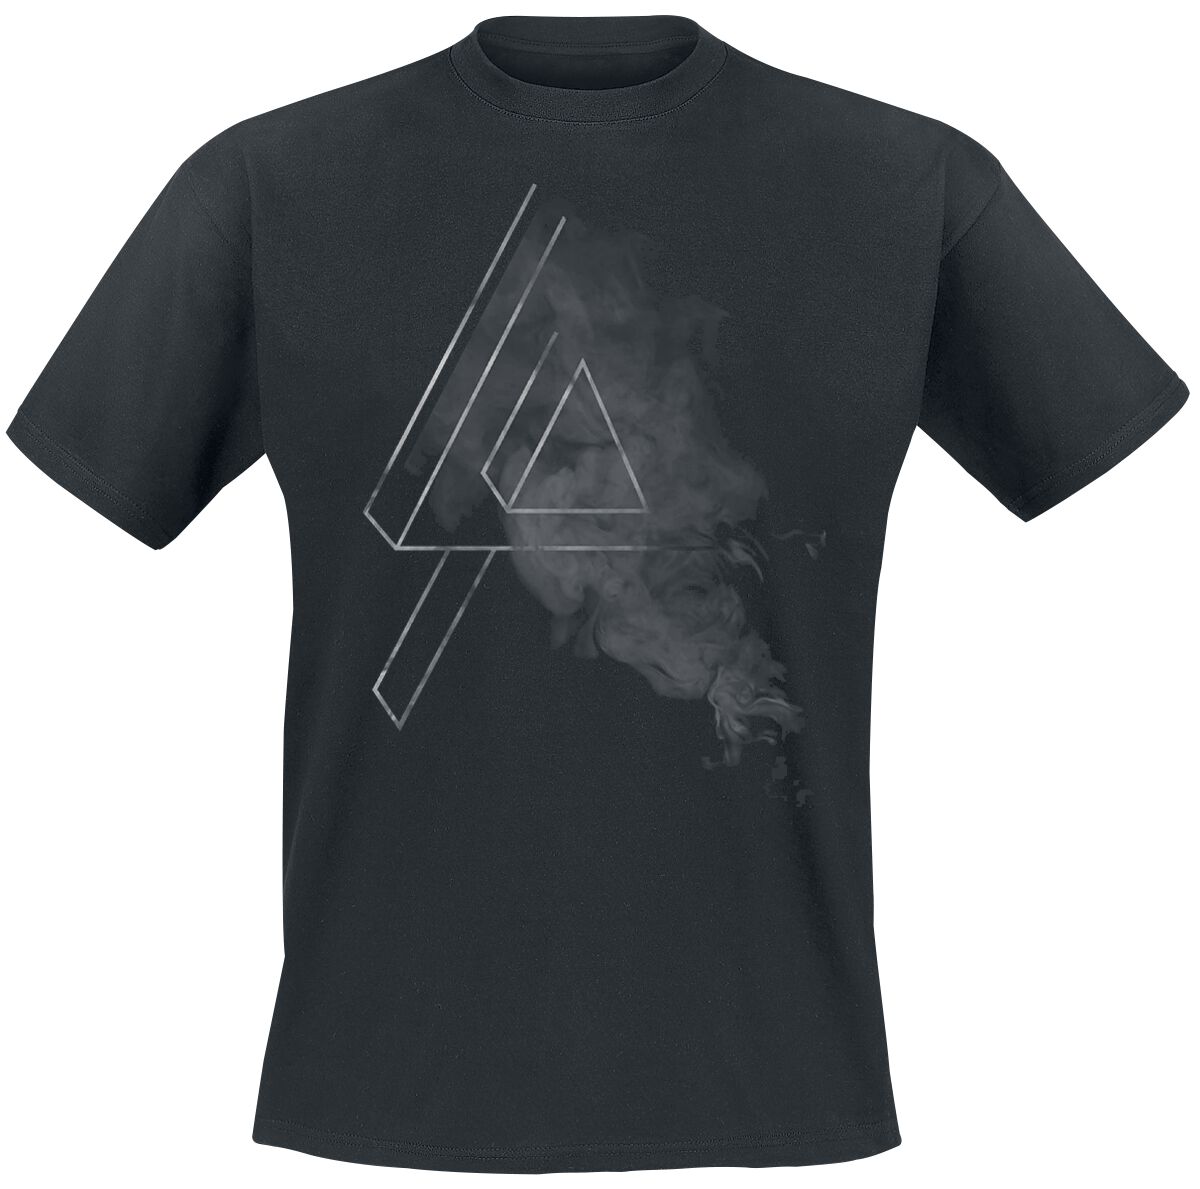 Linkin Park T-Shirt - Smoke Logo - S bis 5XL - für Männer - Größe 5XL - schwarz  - EMP exklusives Merchandise!